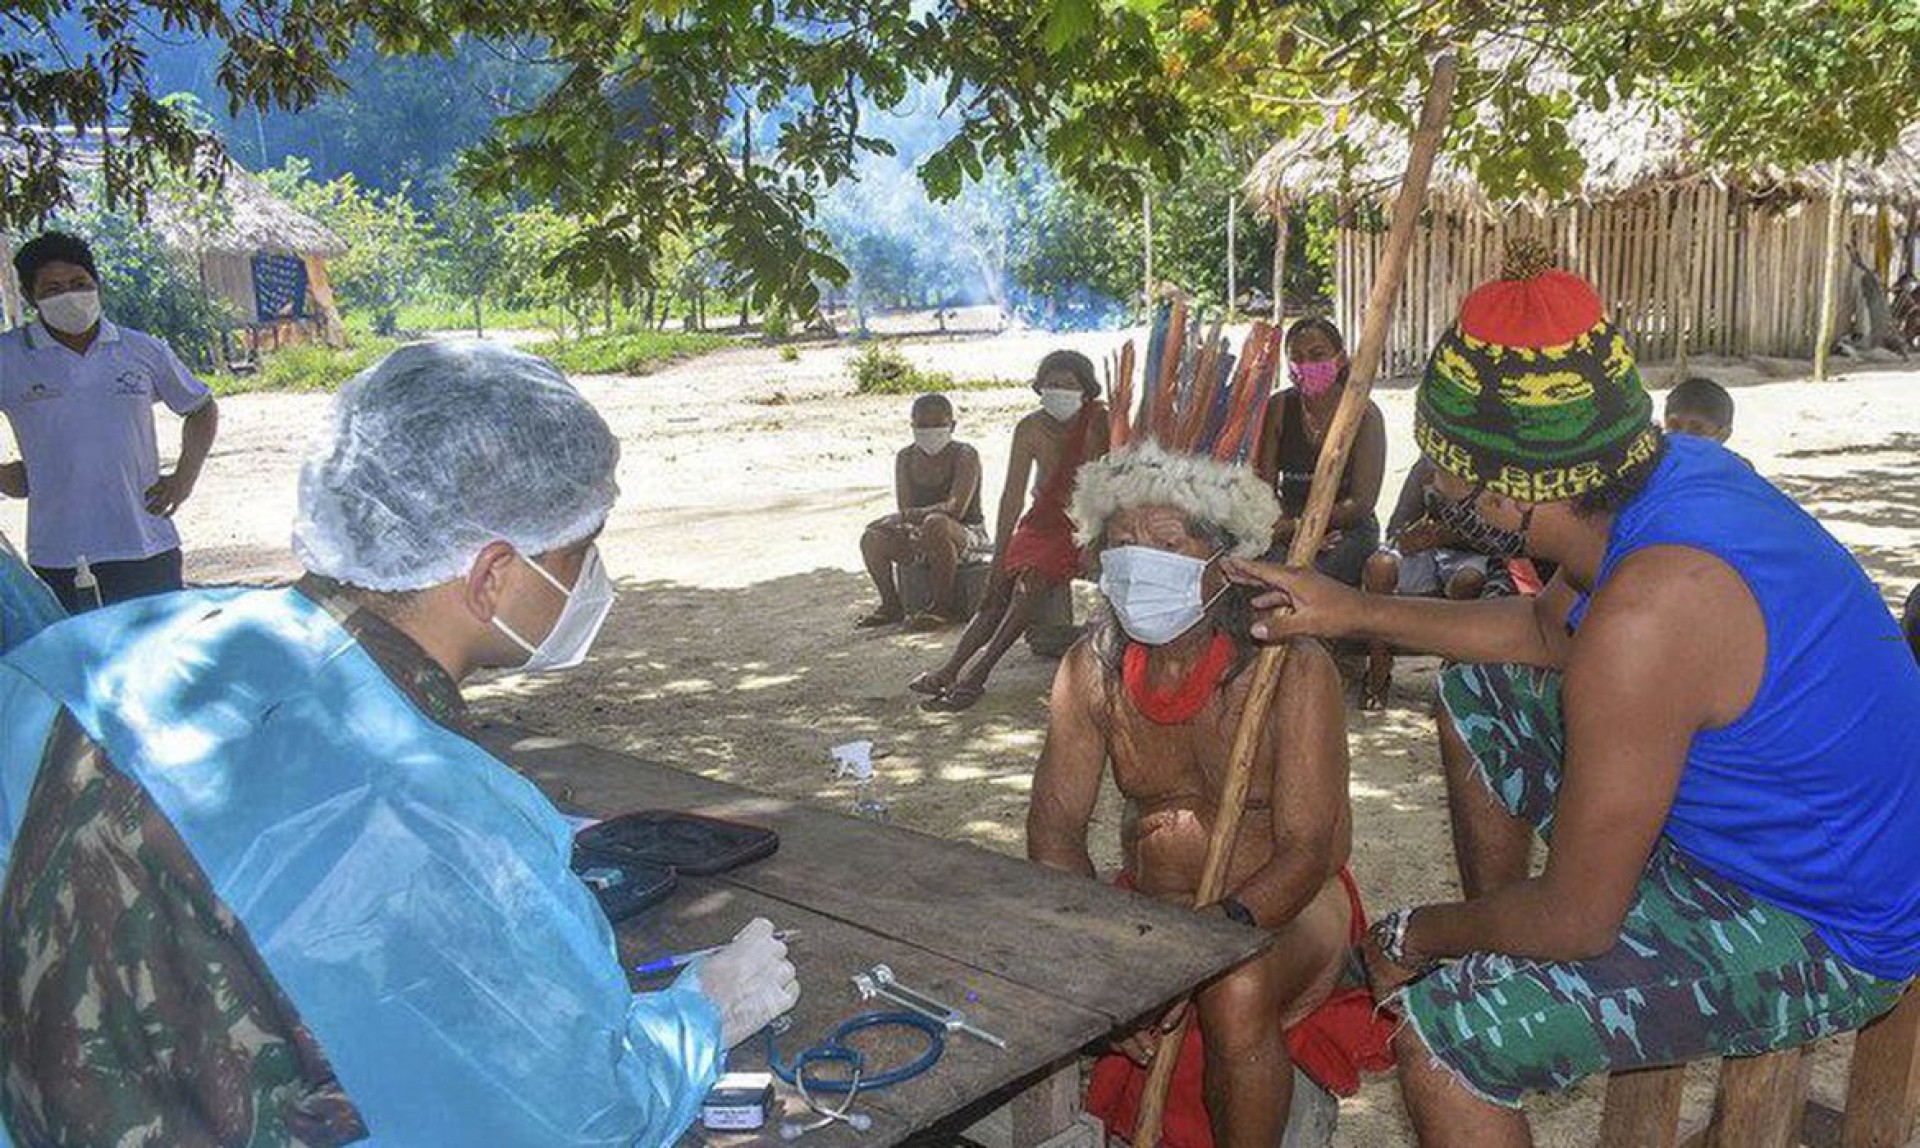 Atendimento médico: comunidades indígenas recebem apoio no combate à Covid-19. (Foto: Divulgação/Ministério da Defesa)